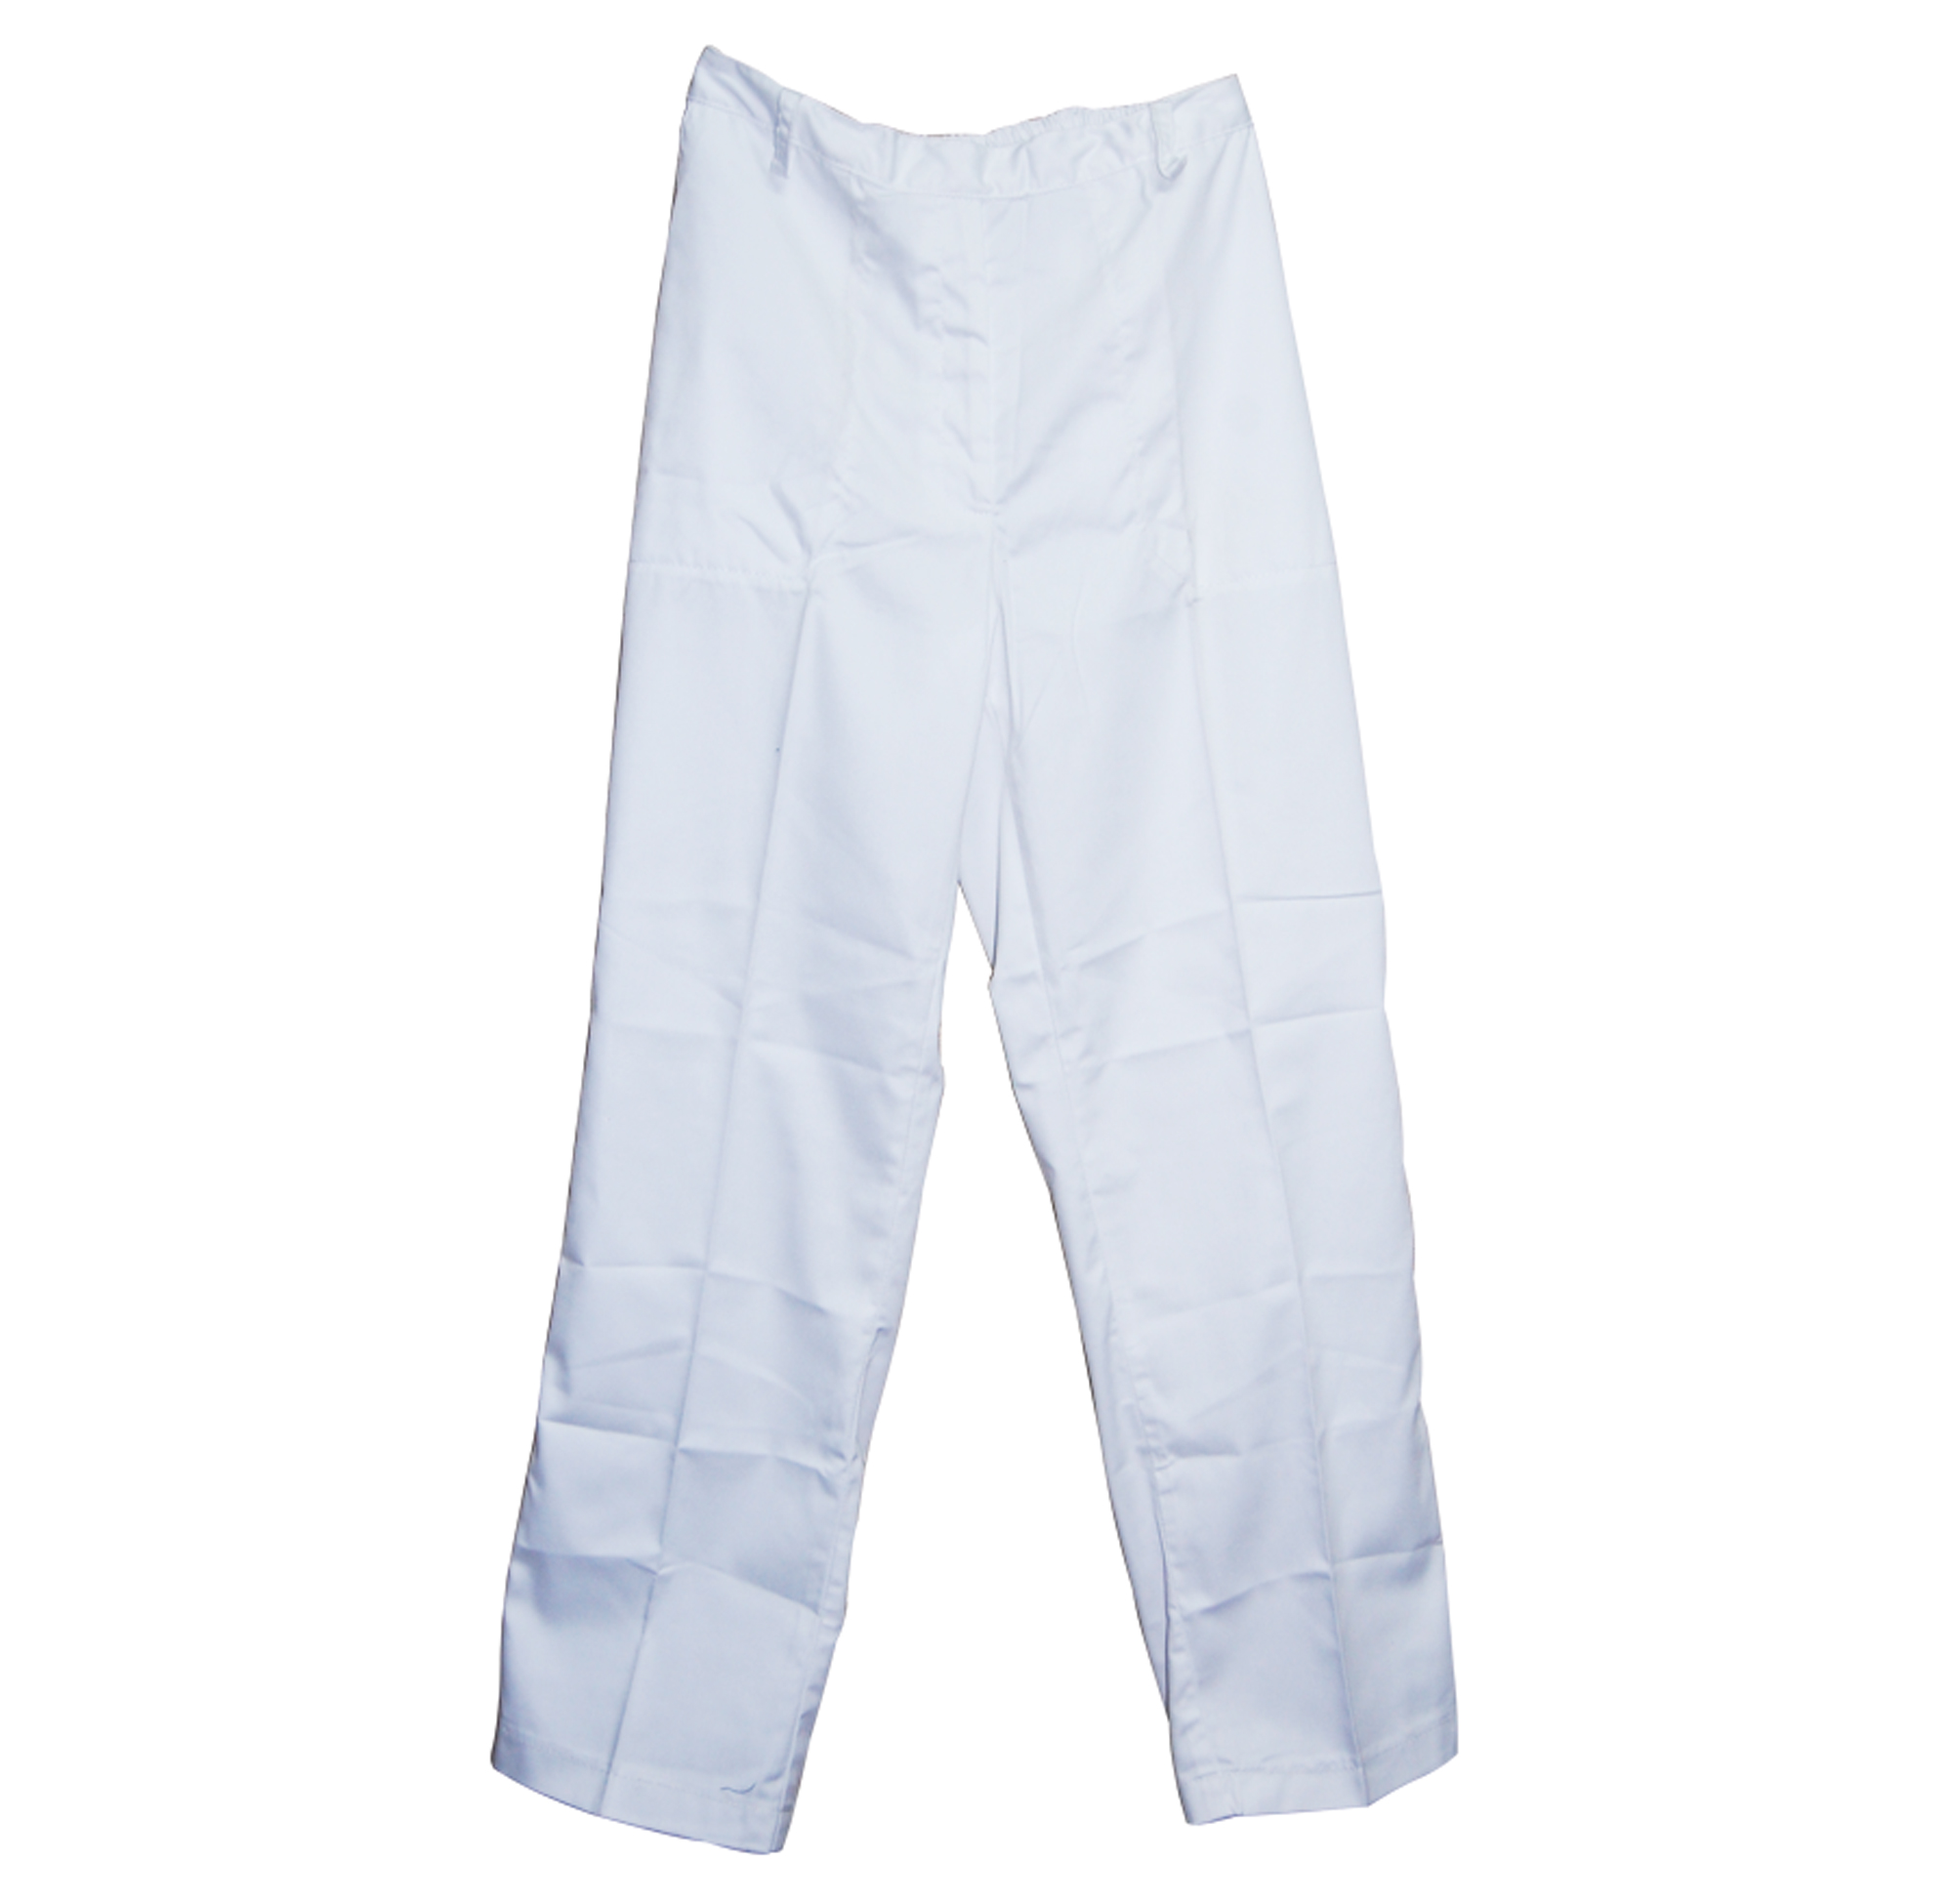 África Prohibición Cambiable Pantalón Hombre Blanco Tallas S - M - L - XL| Cherry Chile